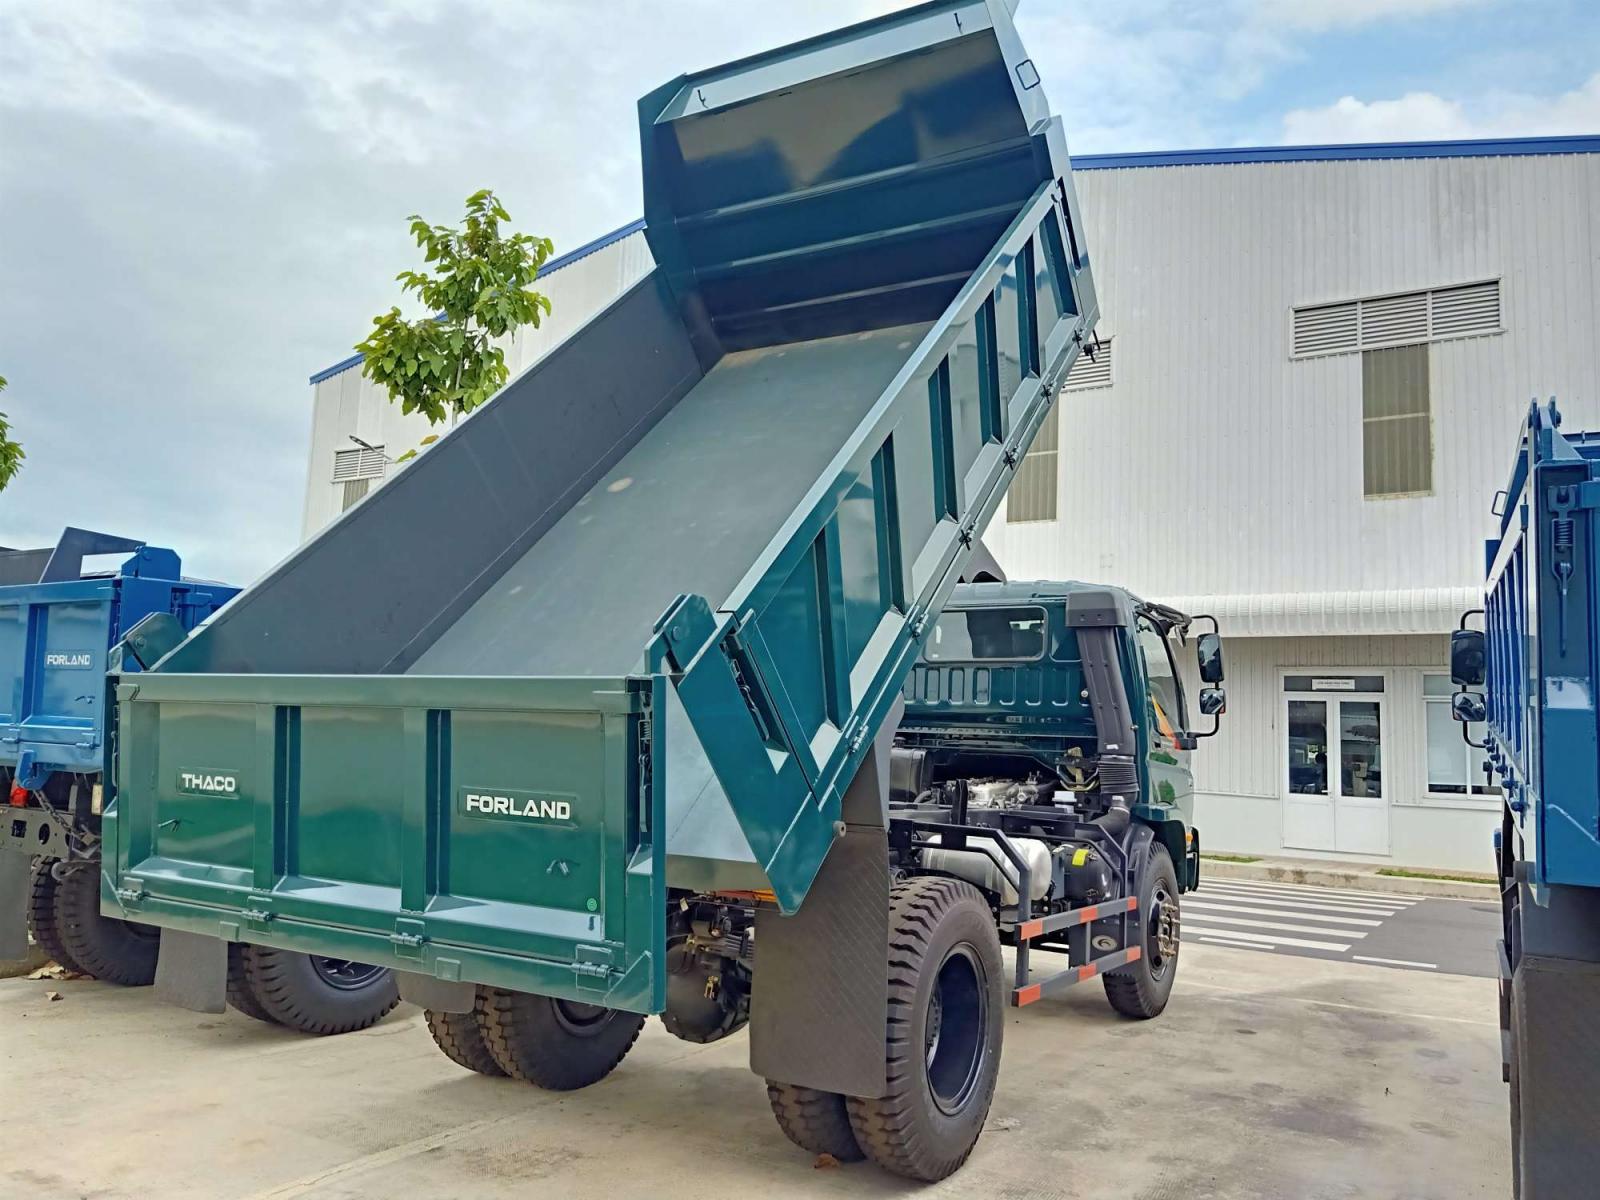 Xe tải 5 tấn - dưới 10 tấn 2019 - Bán xe Ben tải trọng từ 2.5 tấn đến 8.7 tấn, hỗ trợ vay ngân hàng tới 70%
